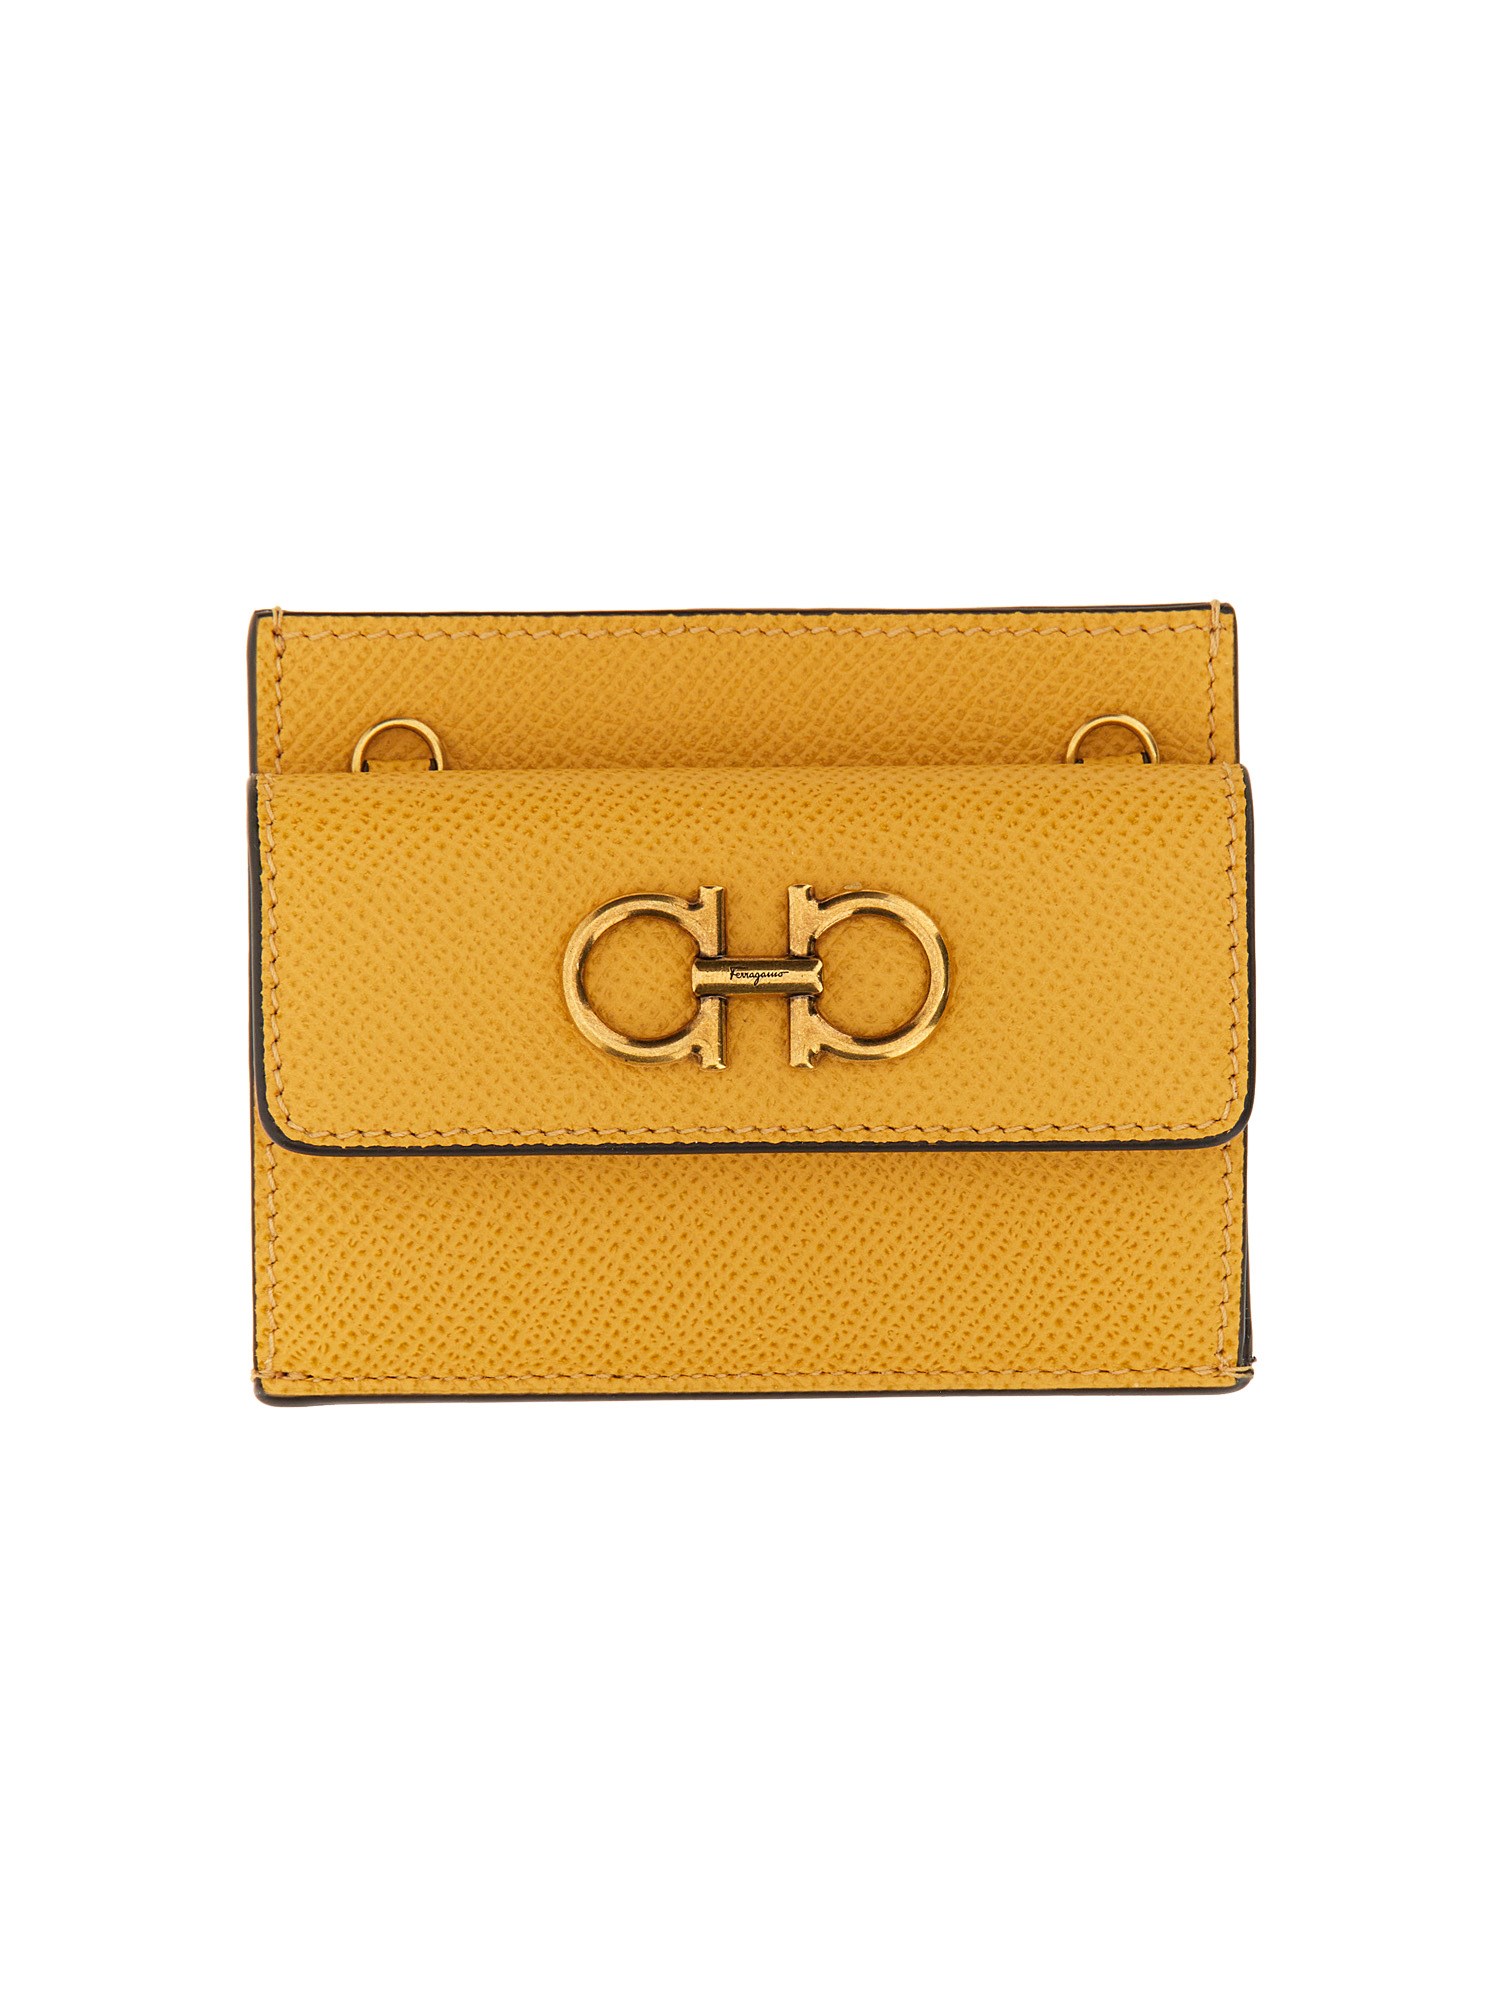 ferragamo wallet with shoulder strap